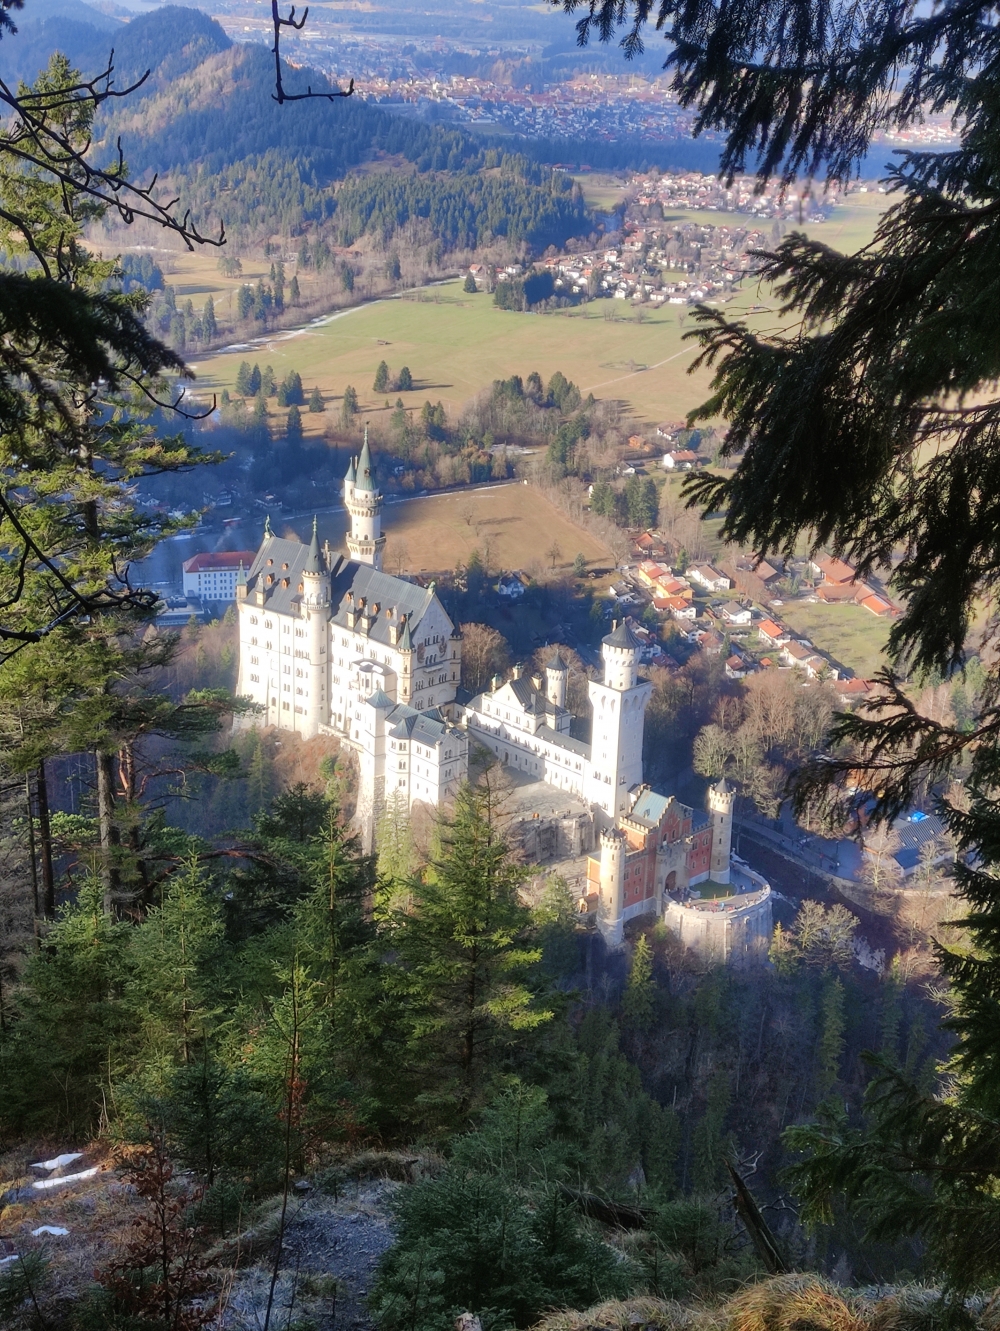 Blick auf Schloss Neuschwanstein (Aussicht am Abgrund)